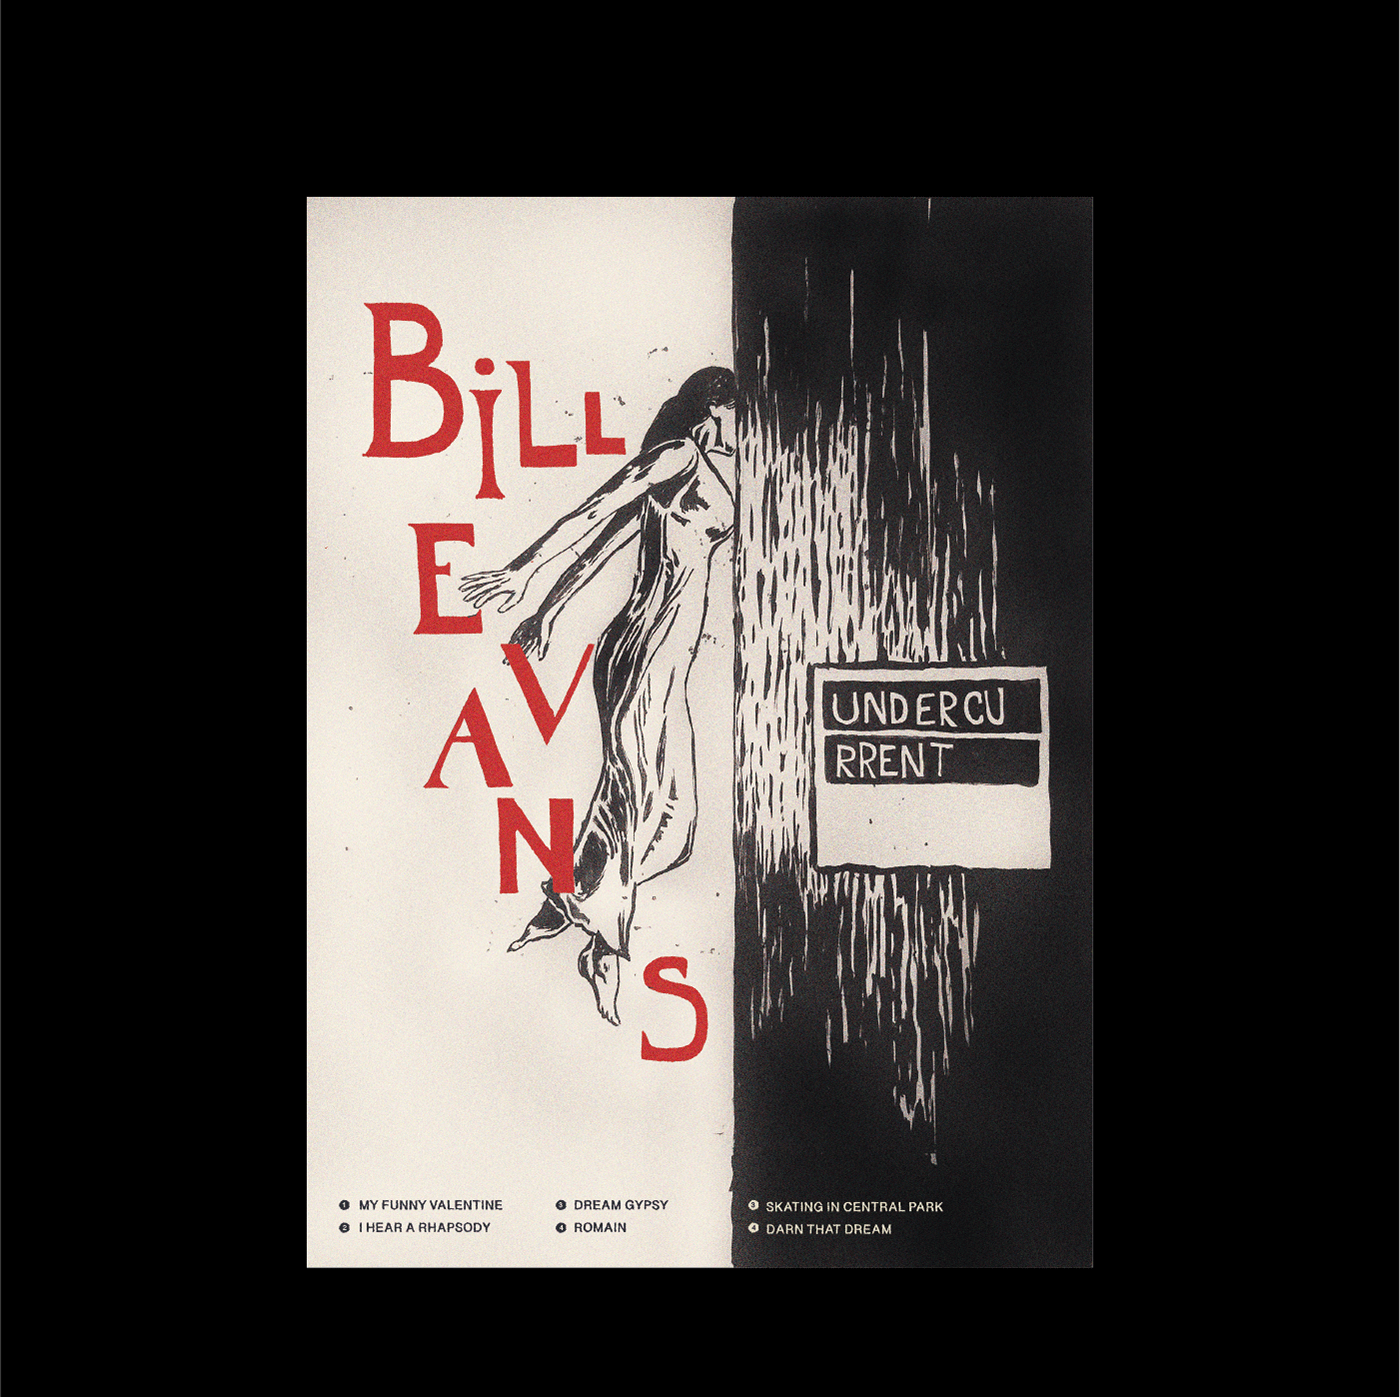 Posters basado en el disco "undercurrent" de Bill Evans. 